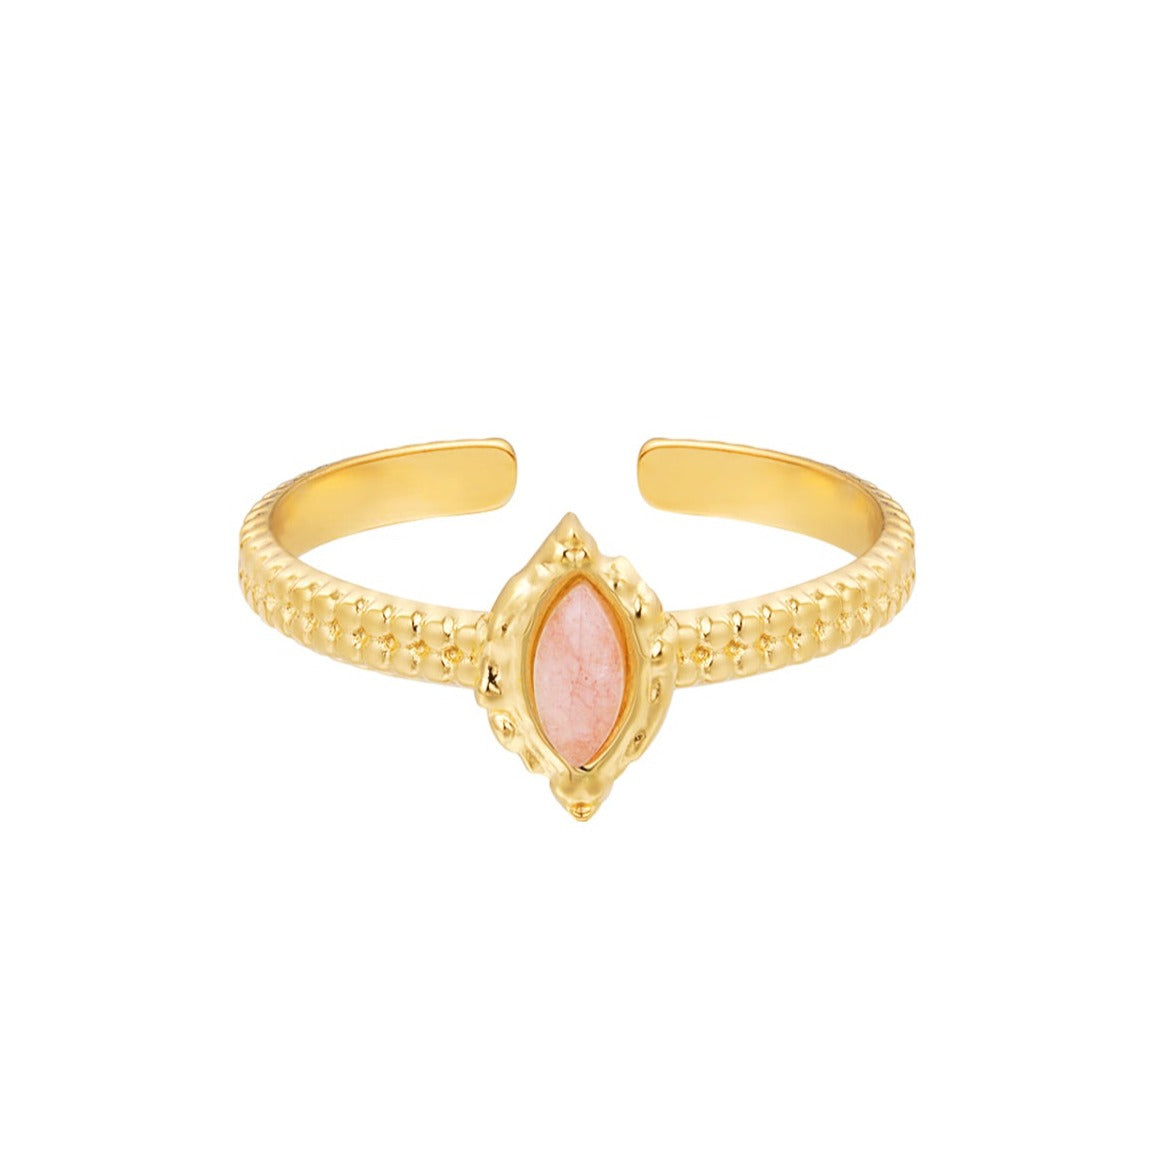 Aphrodite ring - Roze agaat ring goud